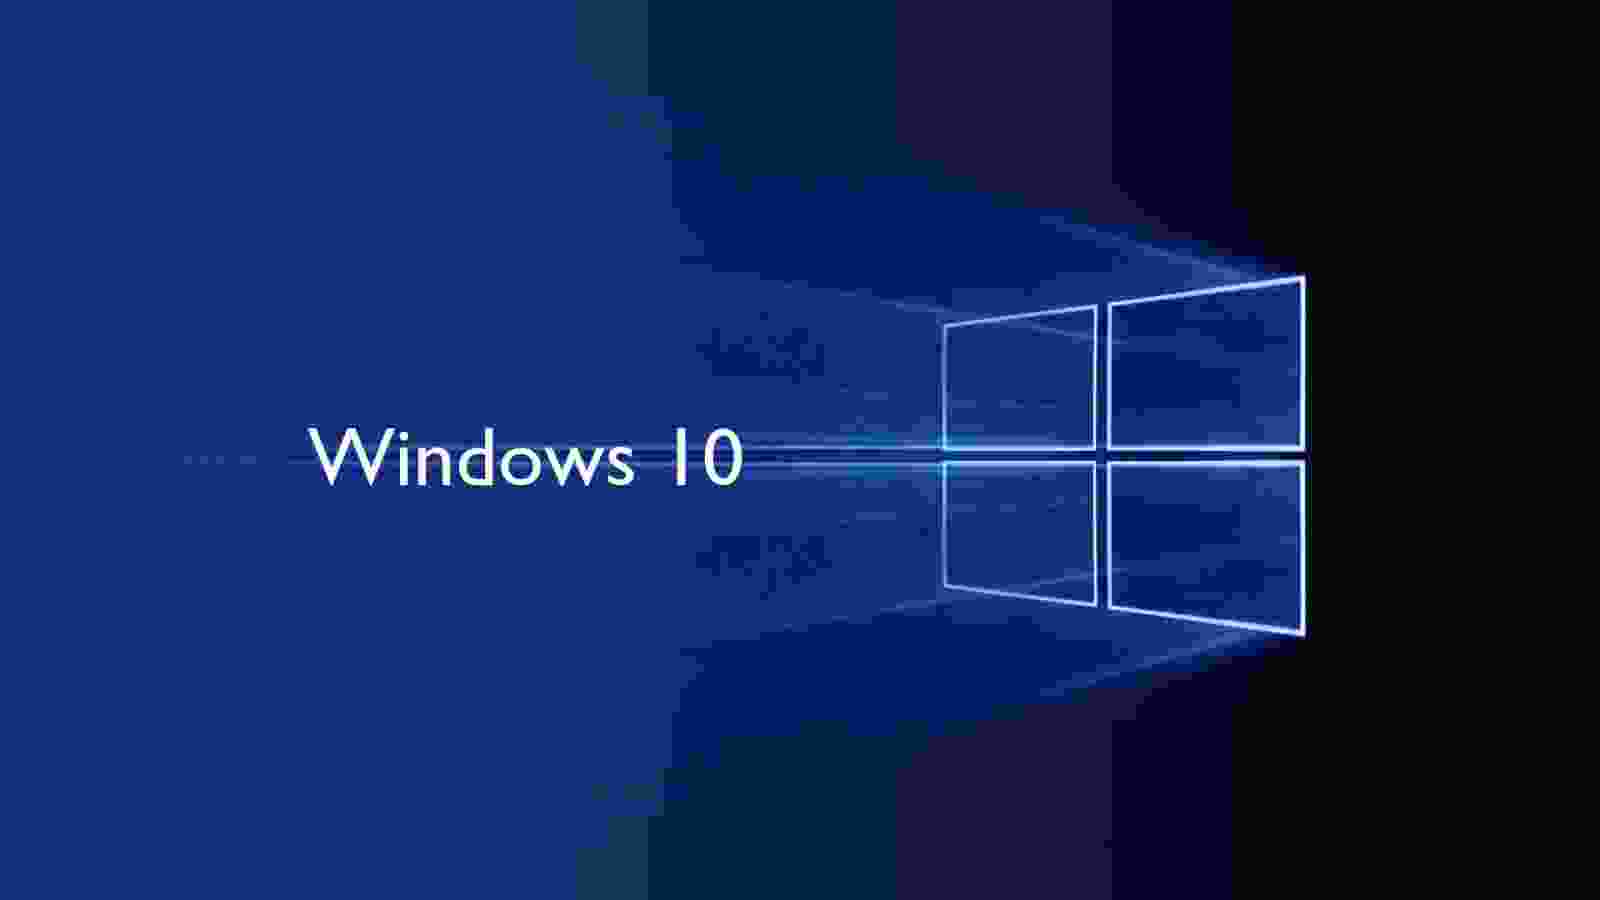 Windows là hệ điều hành phổ biến nhất trên thế giới, phát triển liên tục để đáp ứng nhu cầu ngày càng tăng cao. Để hiểu rõ hơn về sự phát triển này và sức mạnh của Windows, hãy tìm hiểu thông tin về nó qua hình ảnh của chúng tôi.